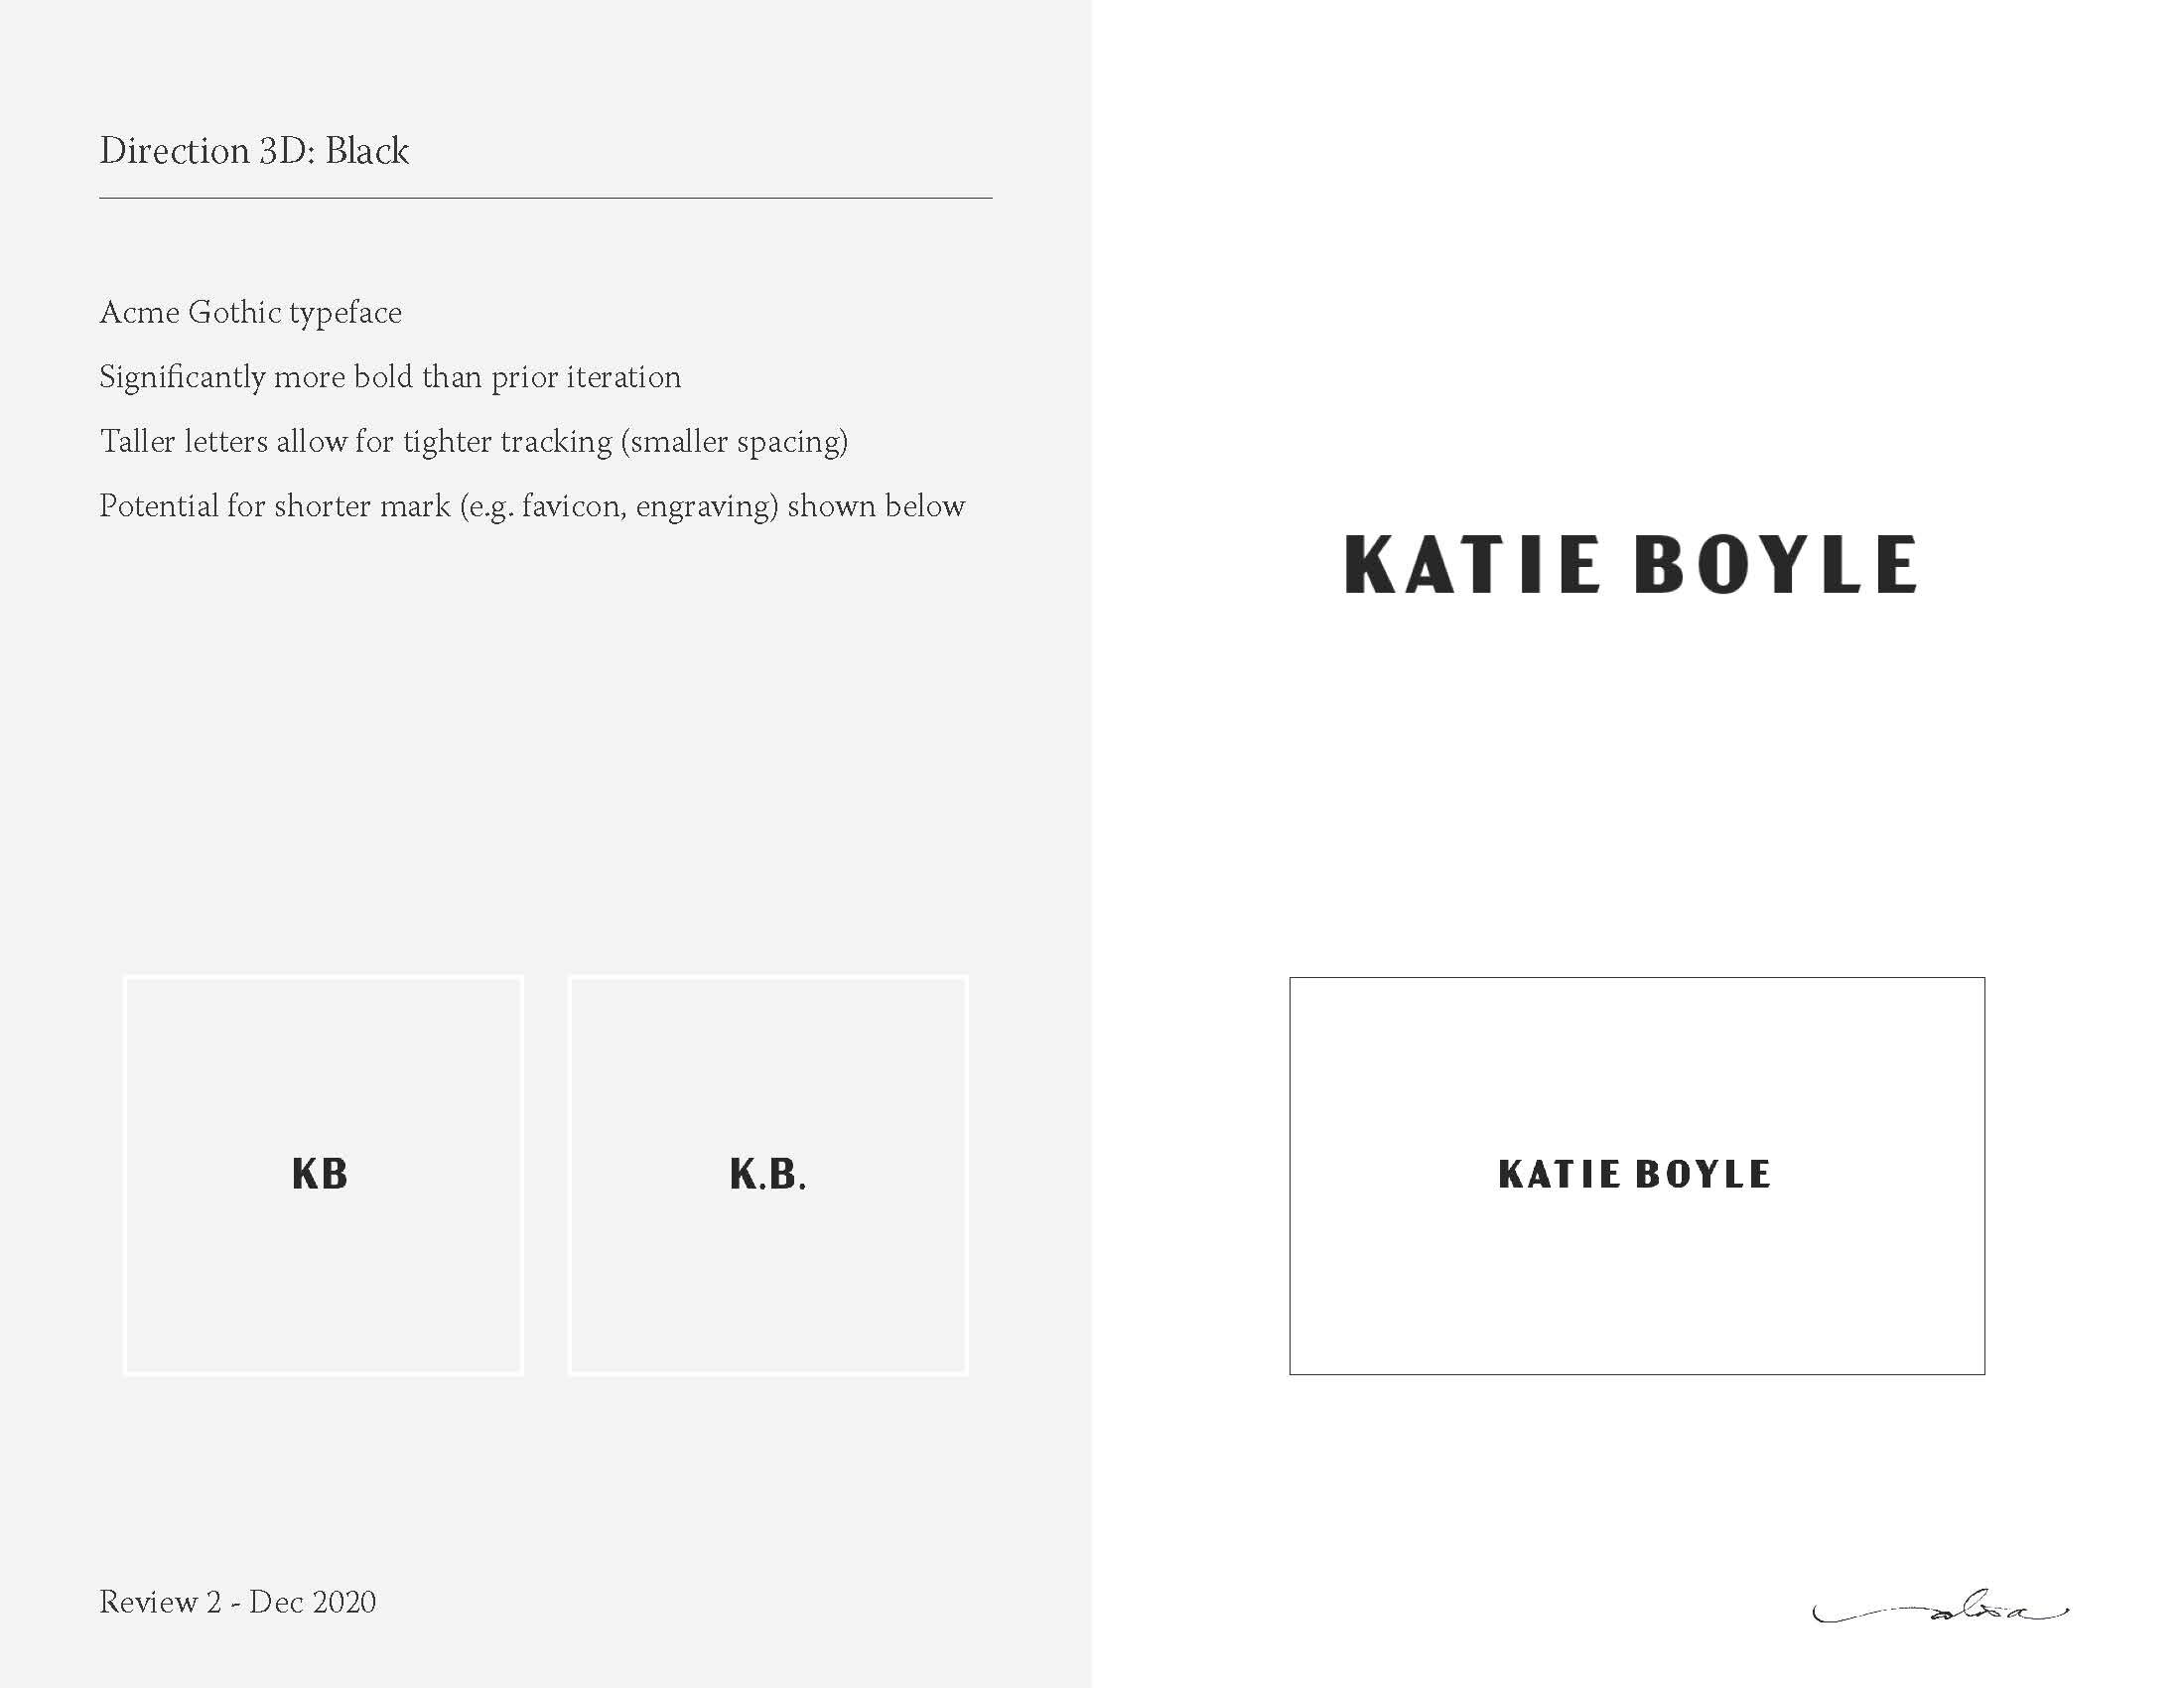 20201229_KatieBoyle-Wordmark-Rev2_Page_3.jpg